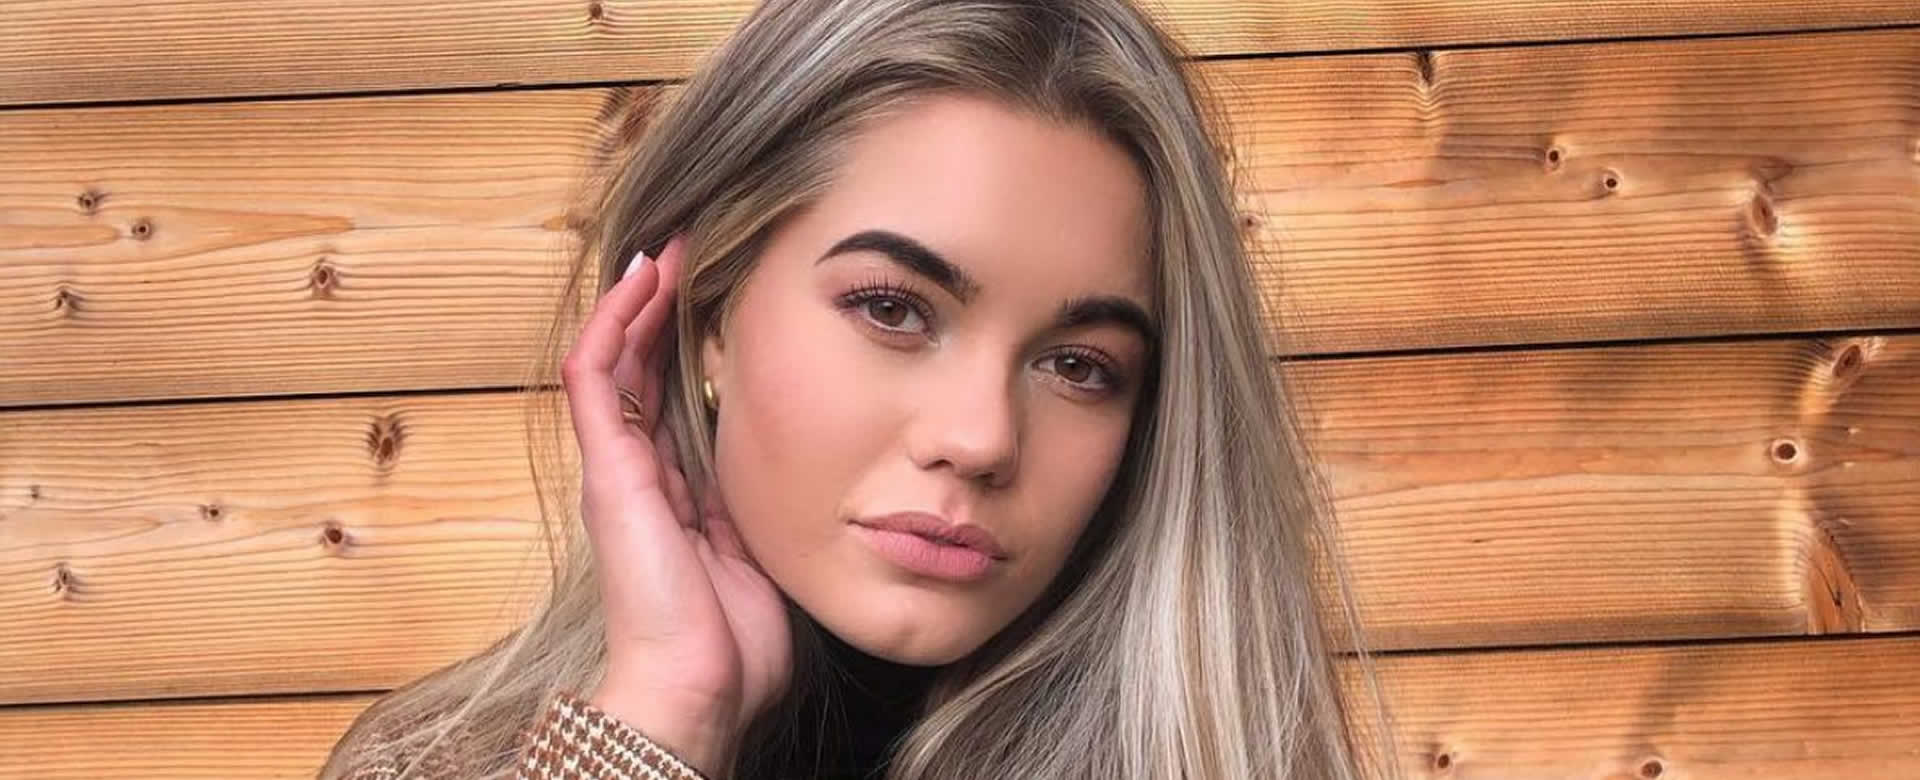 Muere a sus 20 años Miss Teen Universo 2017 tras sufrir un paro cardíaco